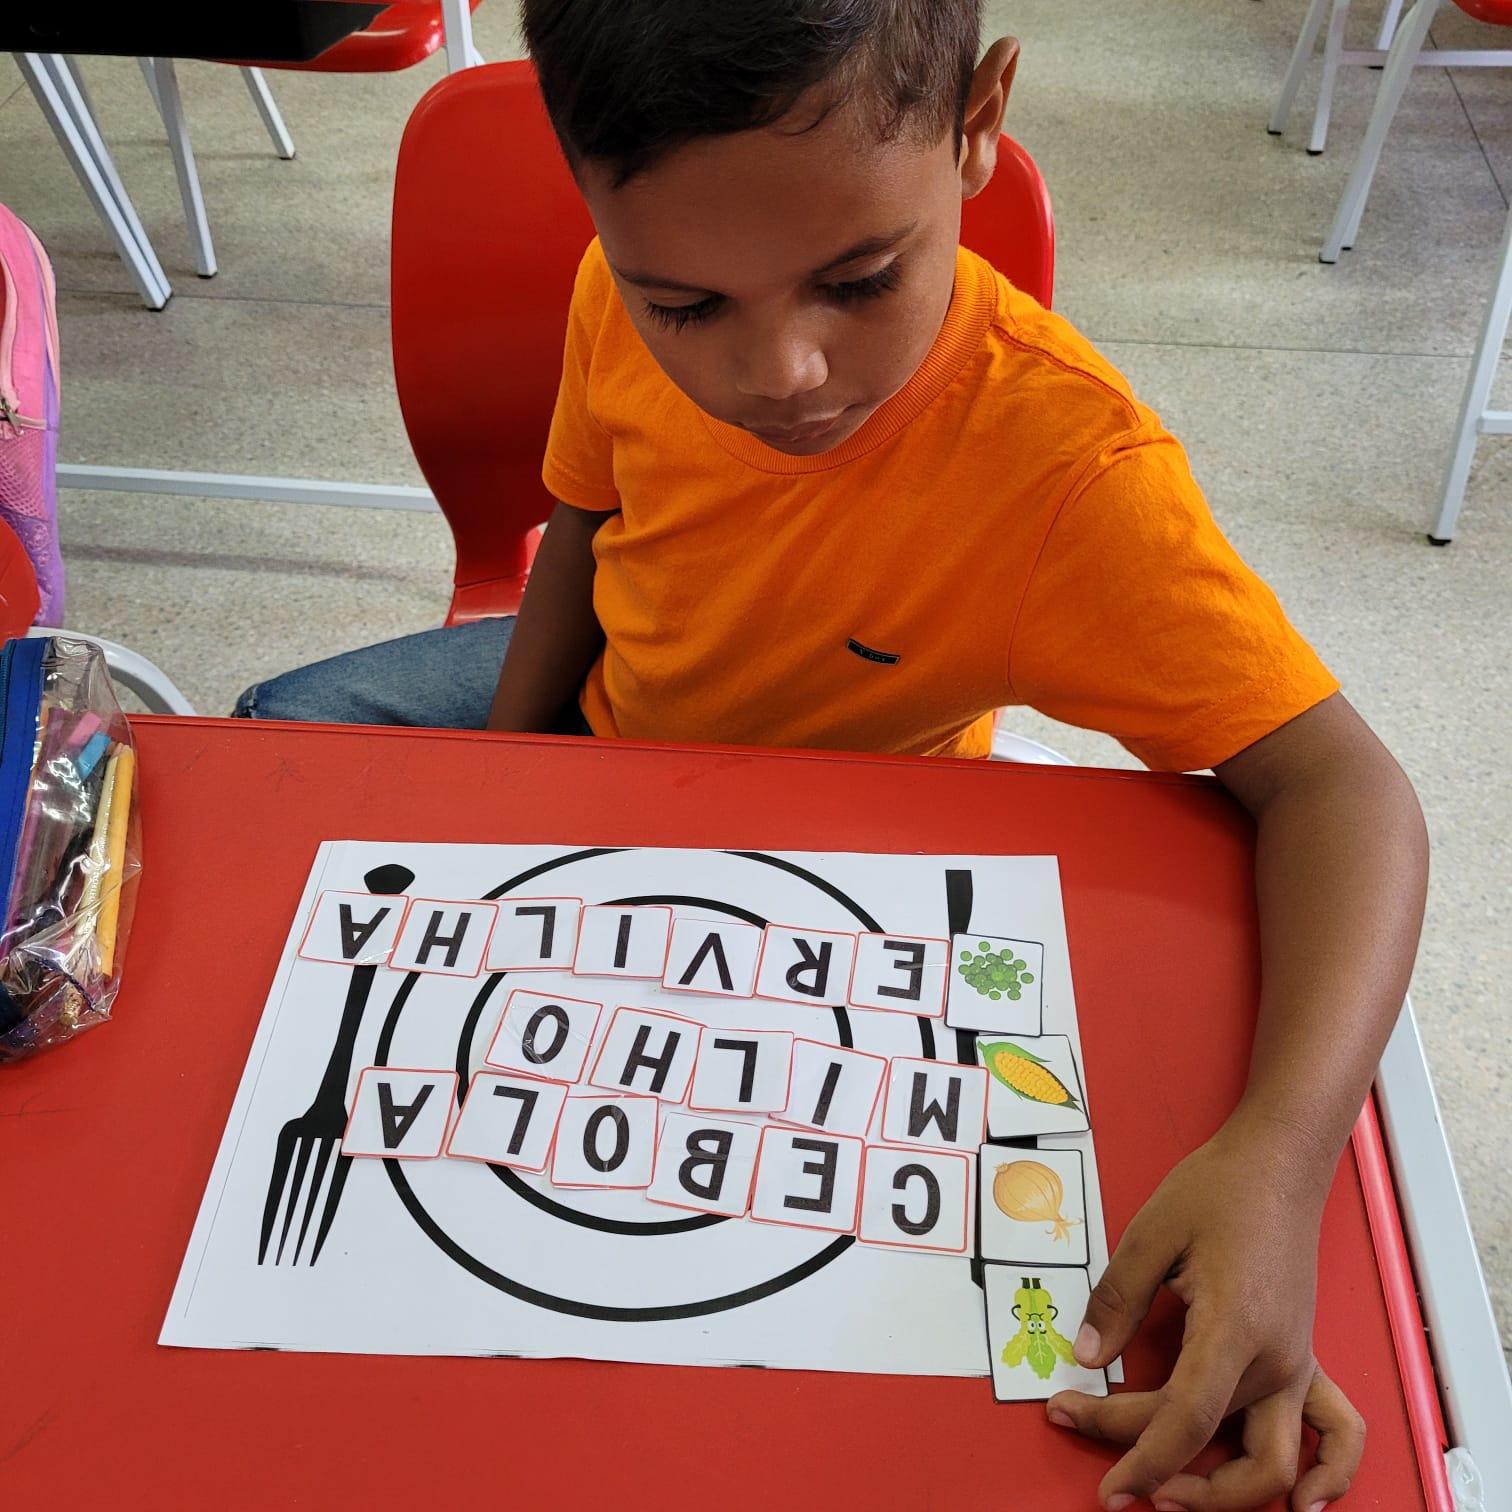 5 Jogos Pedagógicos Português para Atividades de Alfabetização e